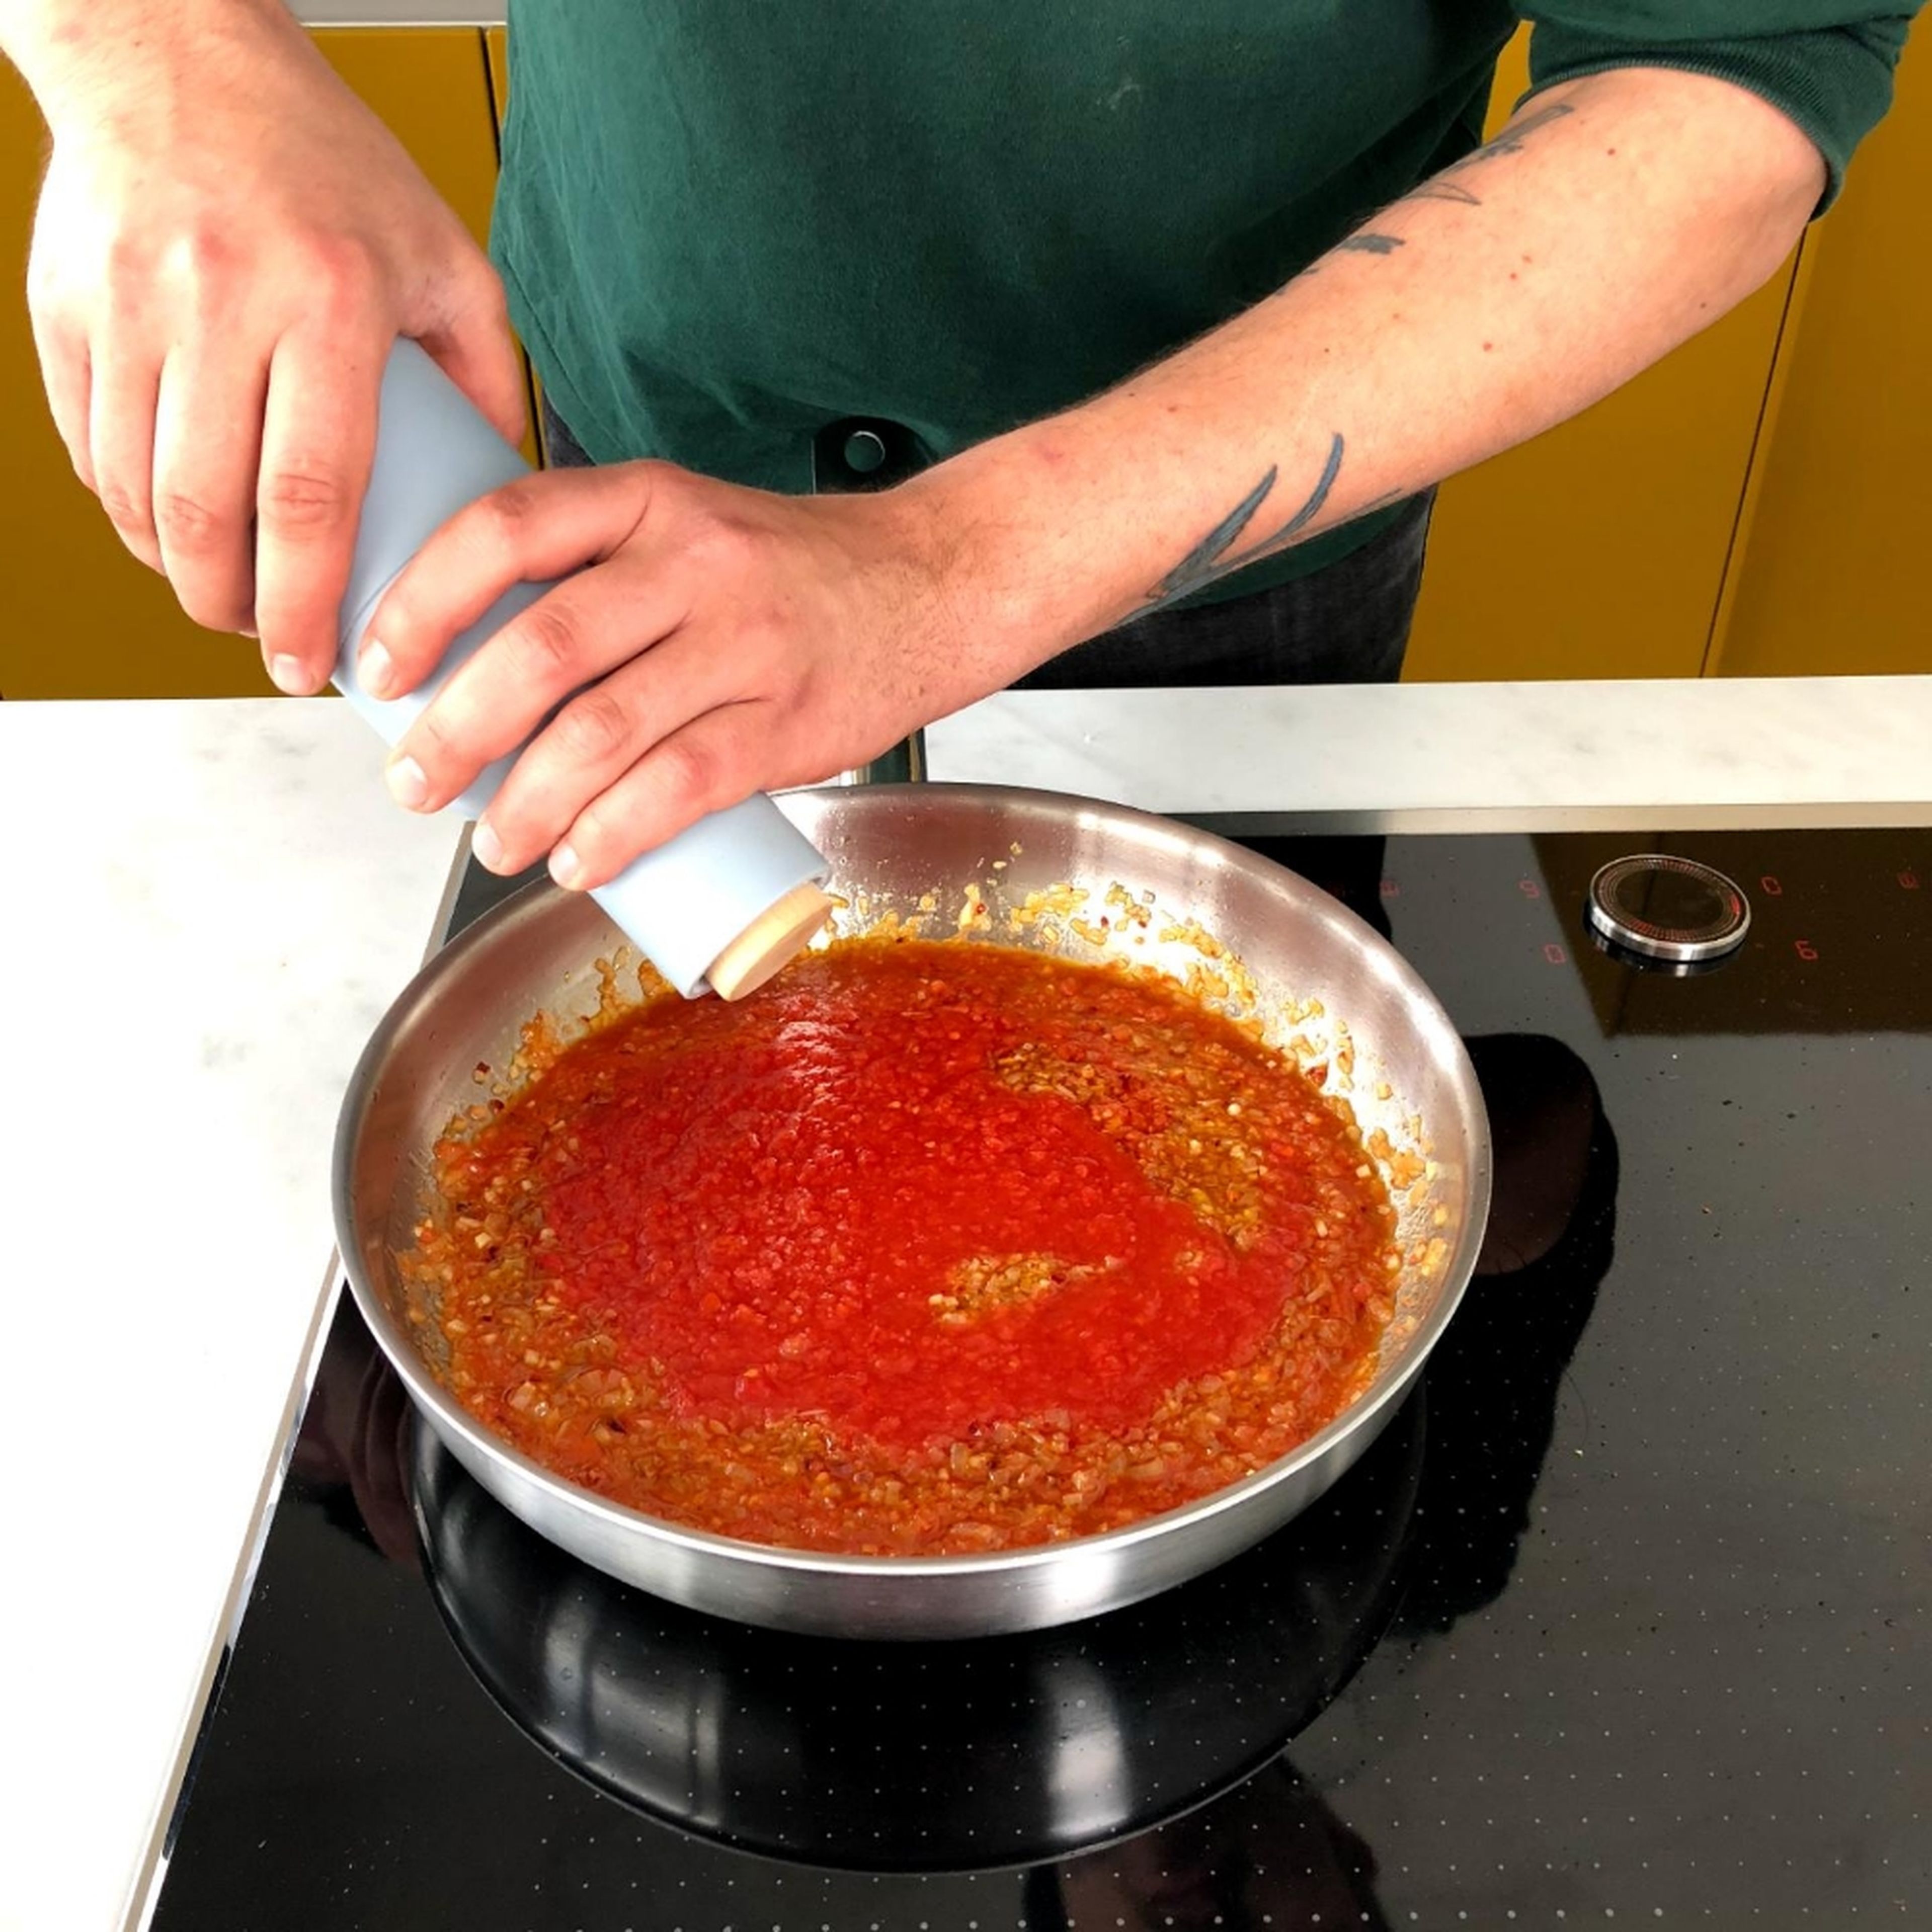 Im Anschluss die gehackten Tomaten dazugeben und die Sauce ca. 10 Min. köcheln. In der Zwischenzeit die Pasta nach Packungsanweisung kochen. Die Sauce mit Salz, Pfeffer und Zucker würzen.